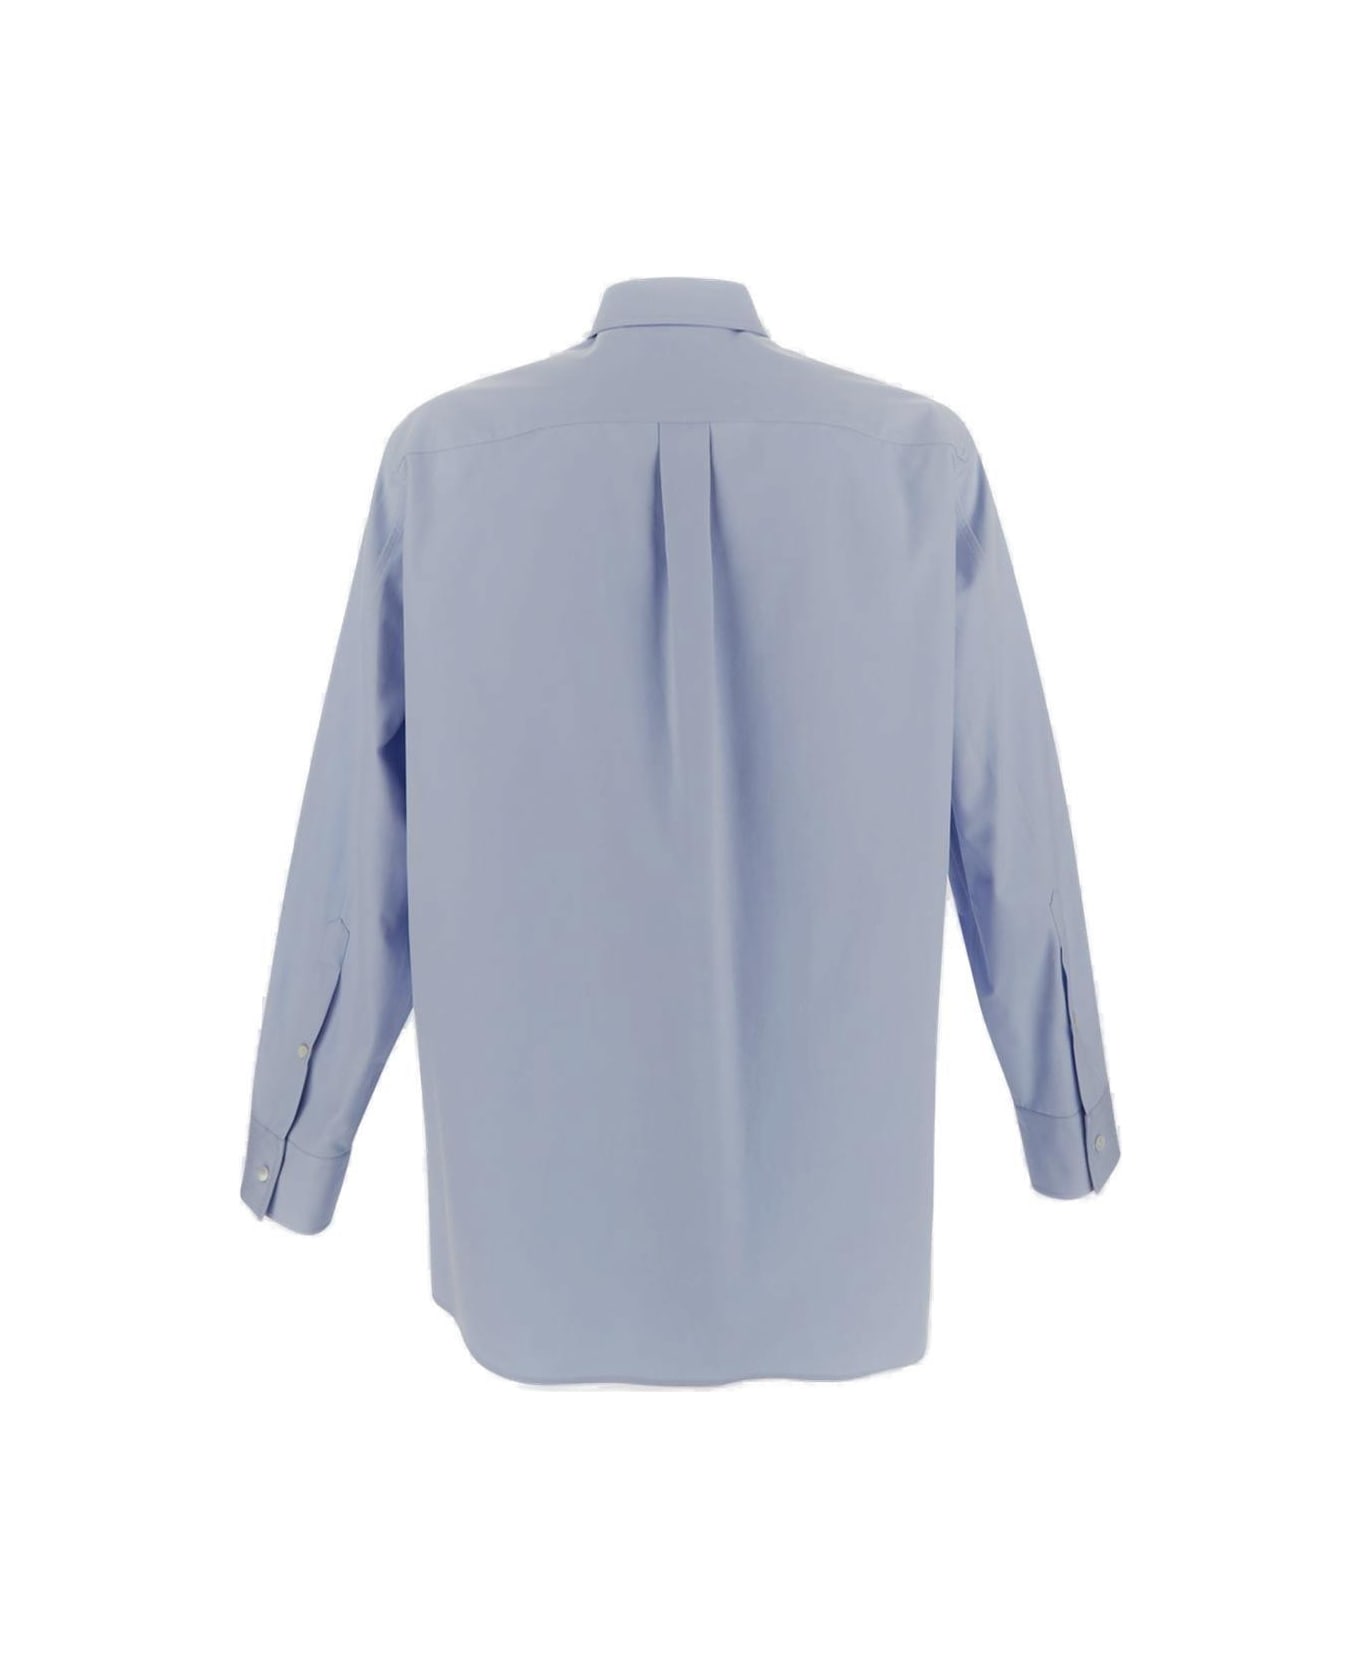 Valentino Classic Chest Pocket Shirt - Azure シャツ